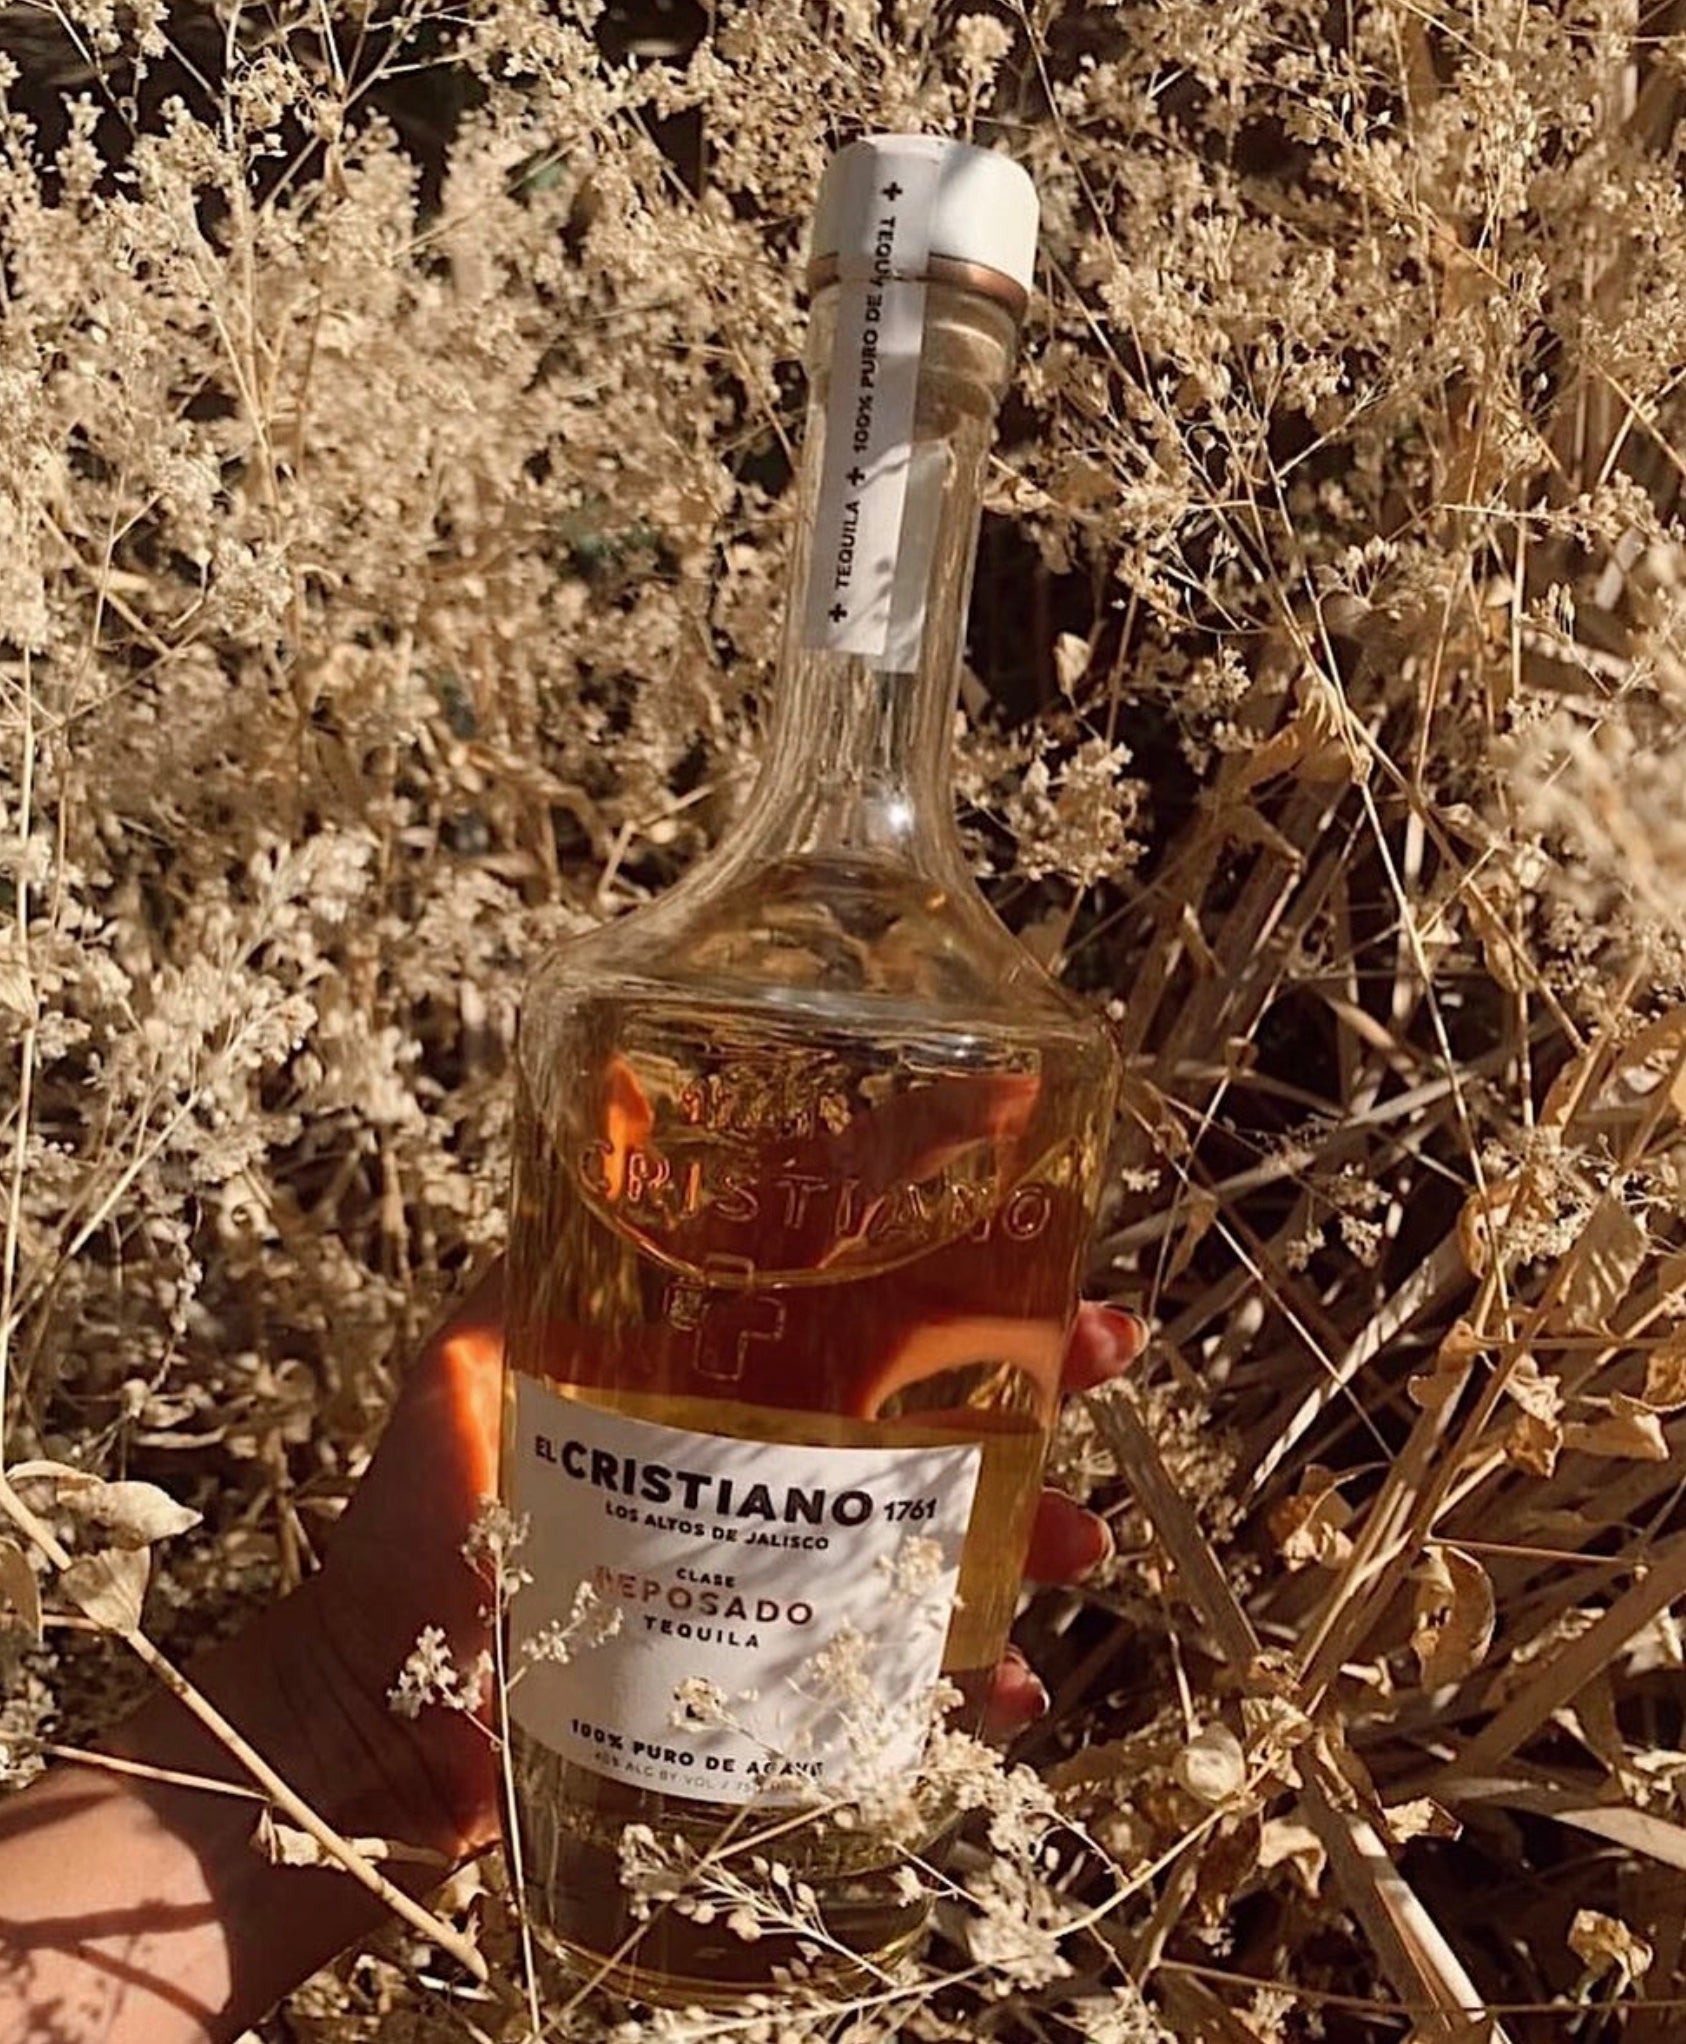 El Cristiano 1761 Reposado Tequila